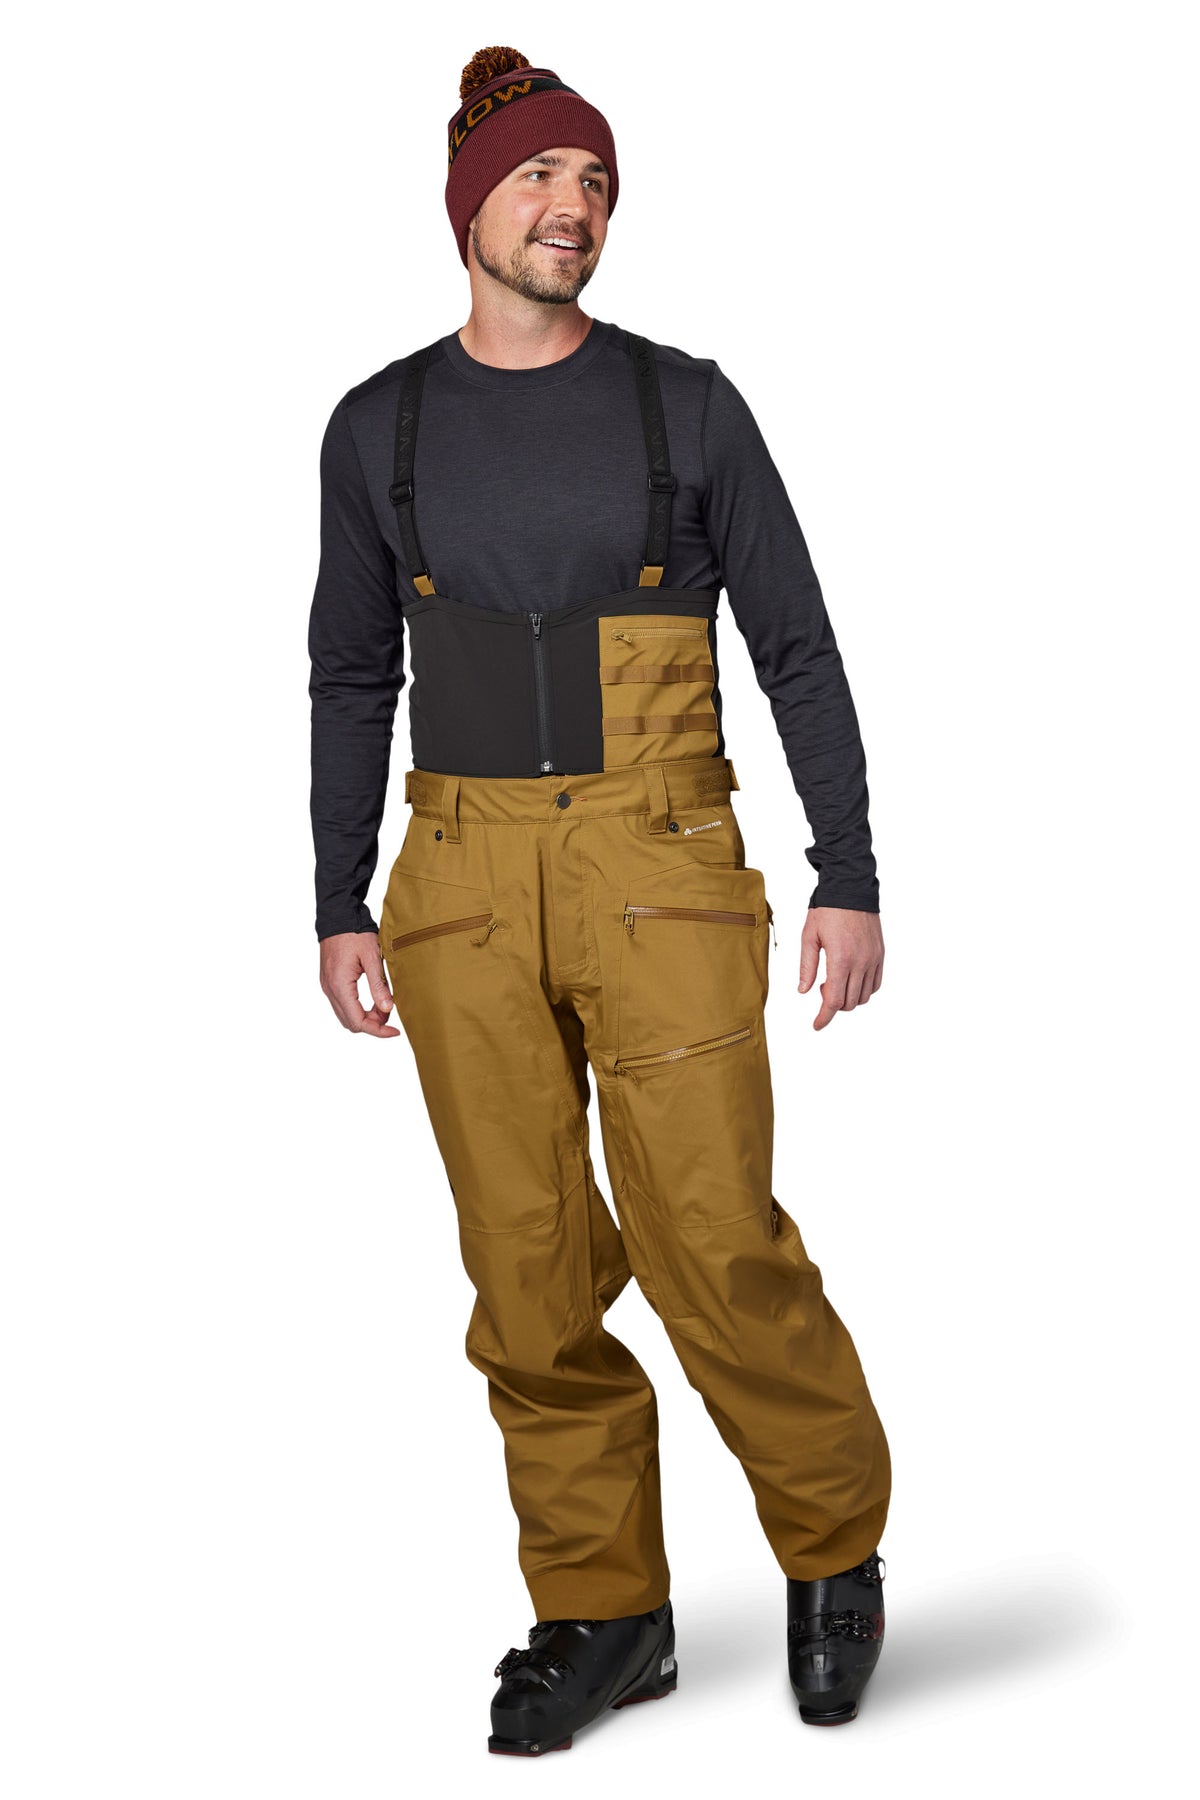 Men's Travel Trekking Cargo Pants TRAVEL 100 - Khaki FORCLAZ | Decathlon